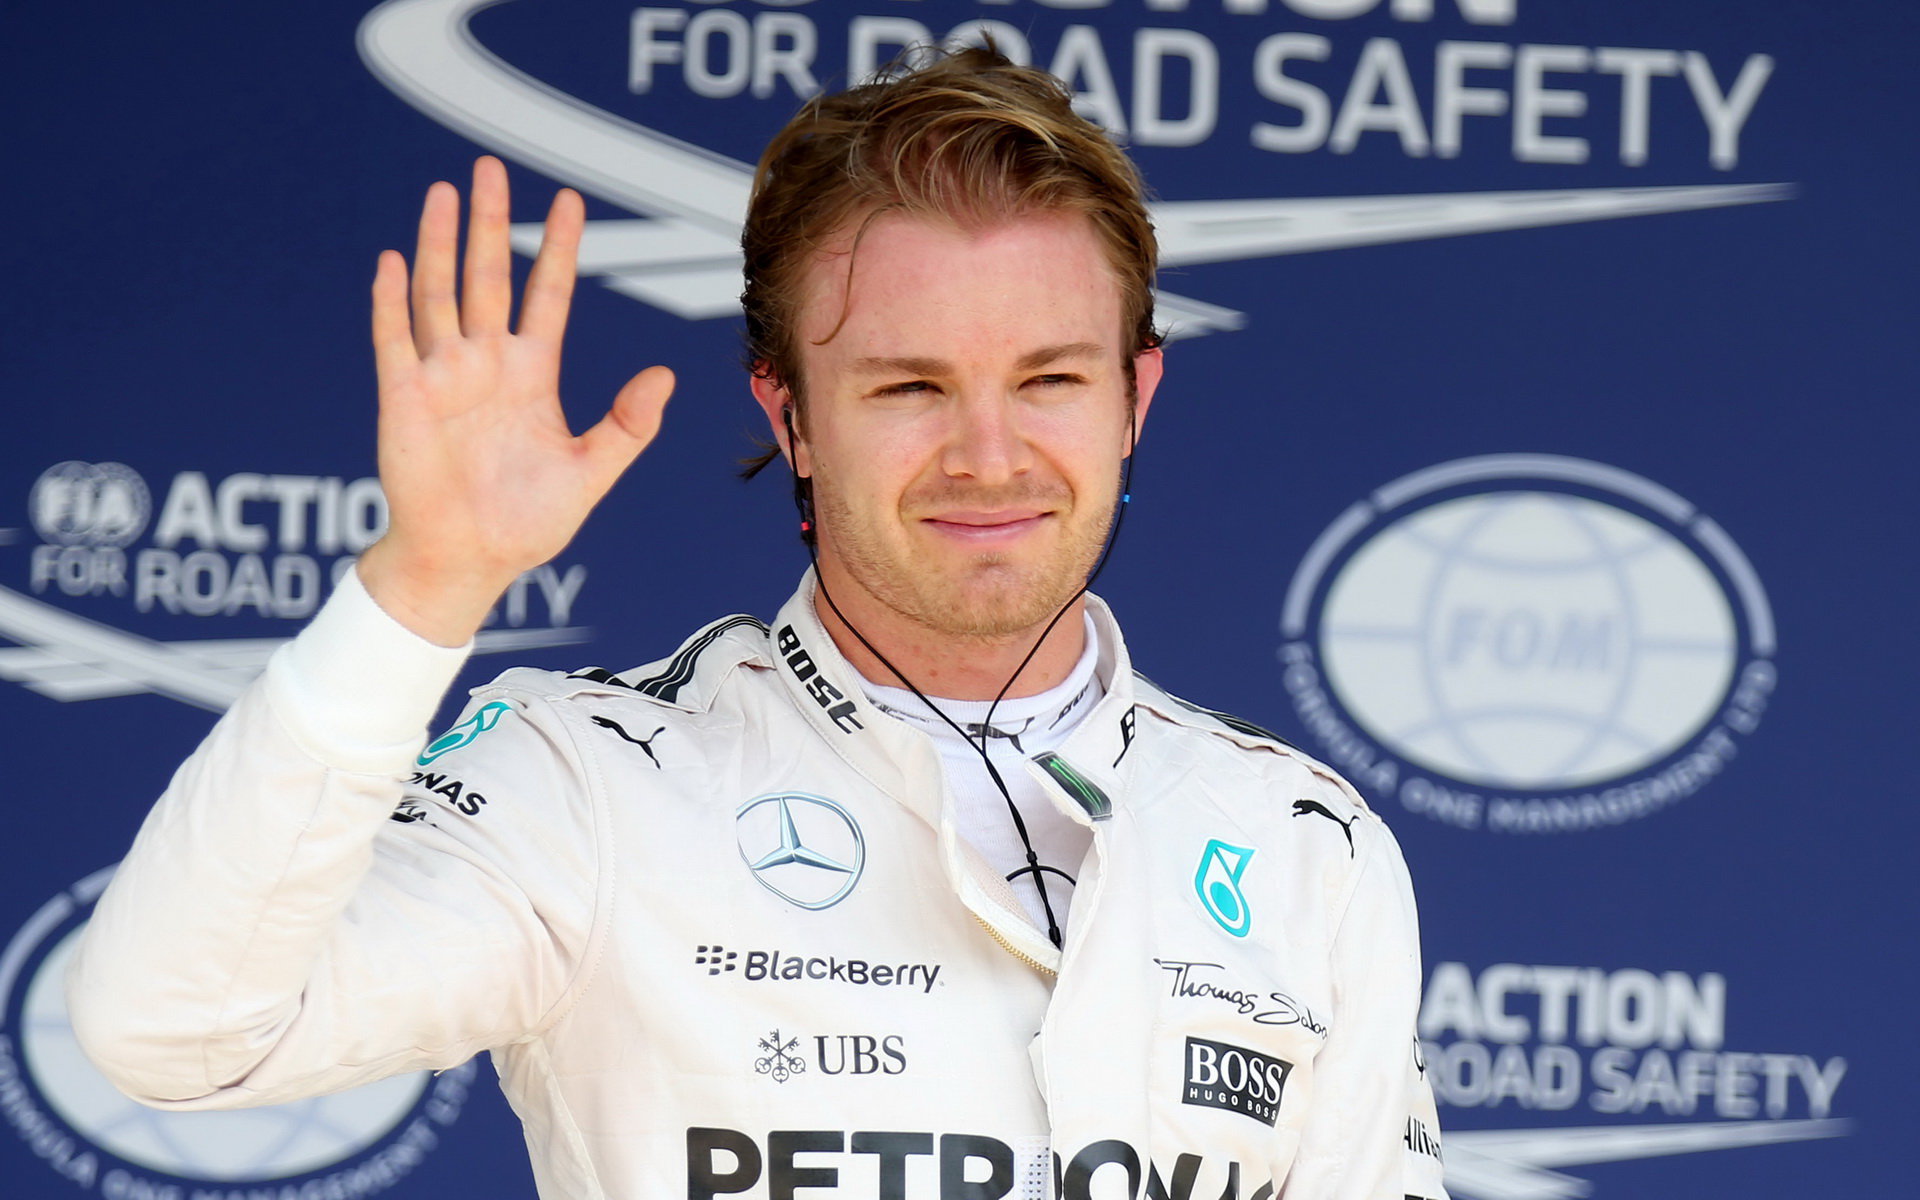 Nico Rosberg v posledních závodech Hamiltonovu image poněkud poničil.